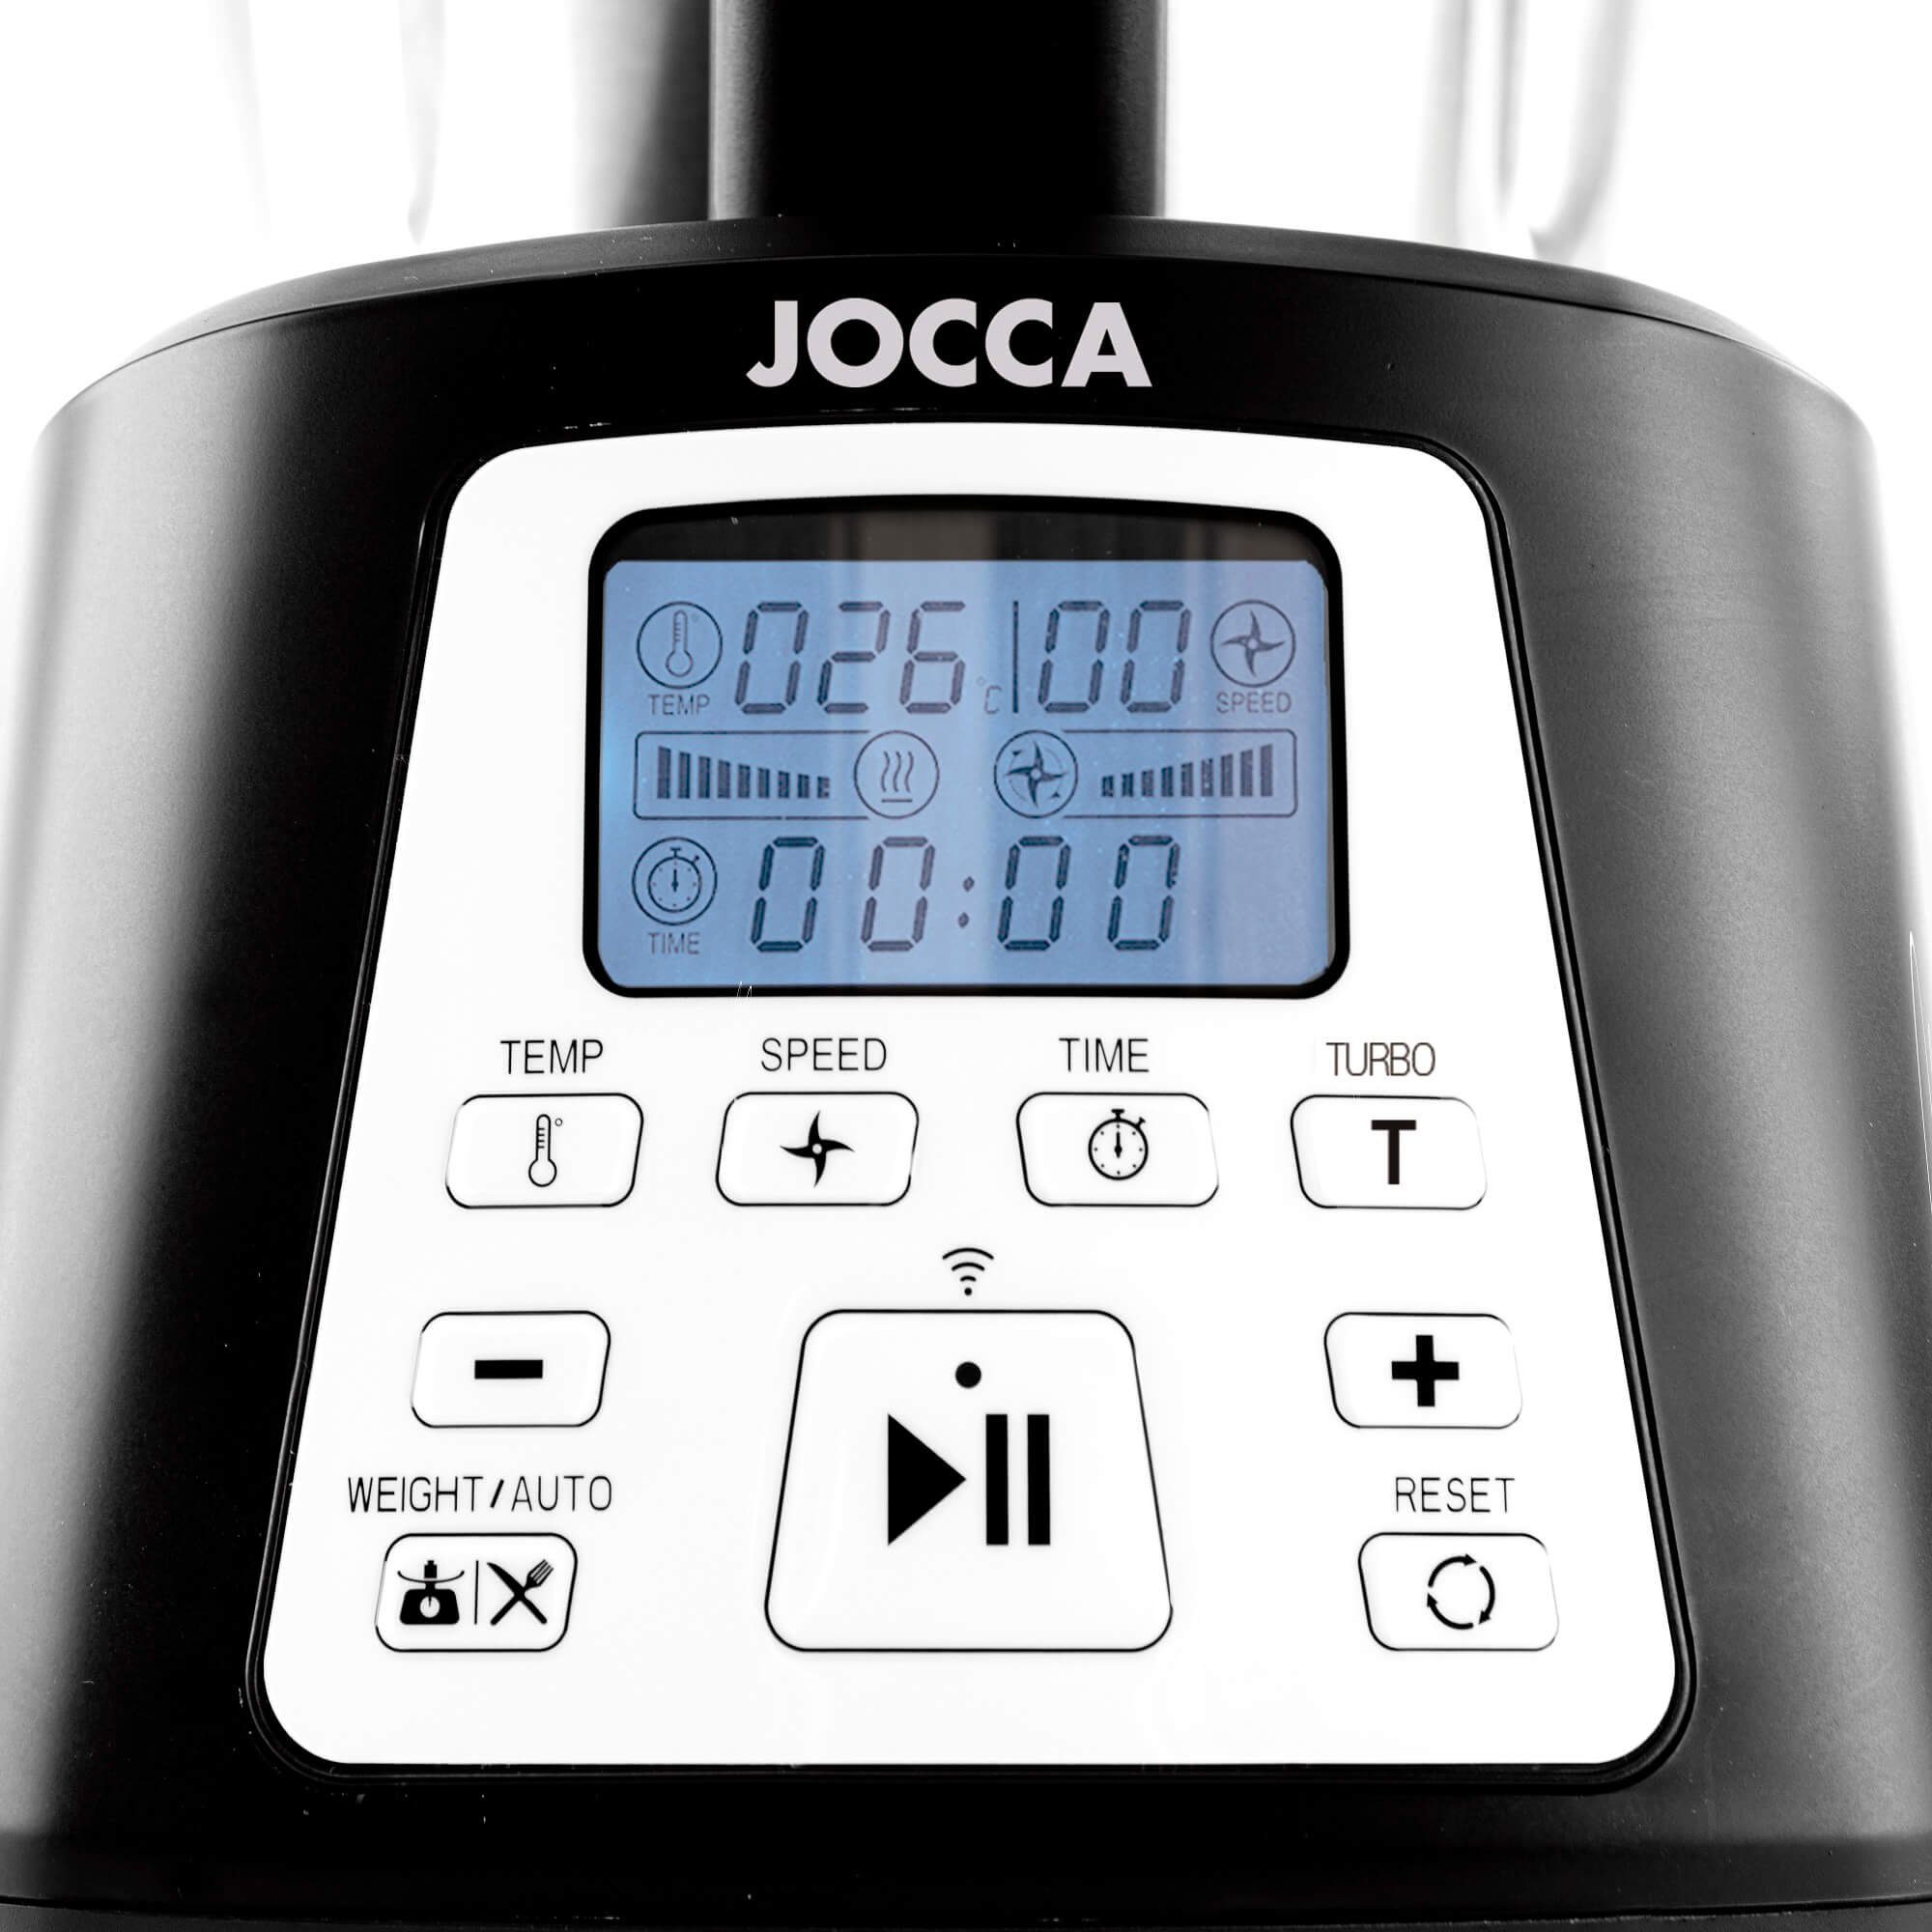 App, Multifunktions-Küchenmaschine W 550 12 mit Jocca Funktionsweisen, All-in-One Küchenmaschine